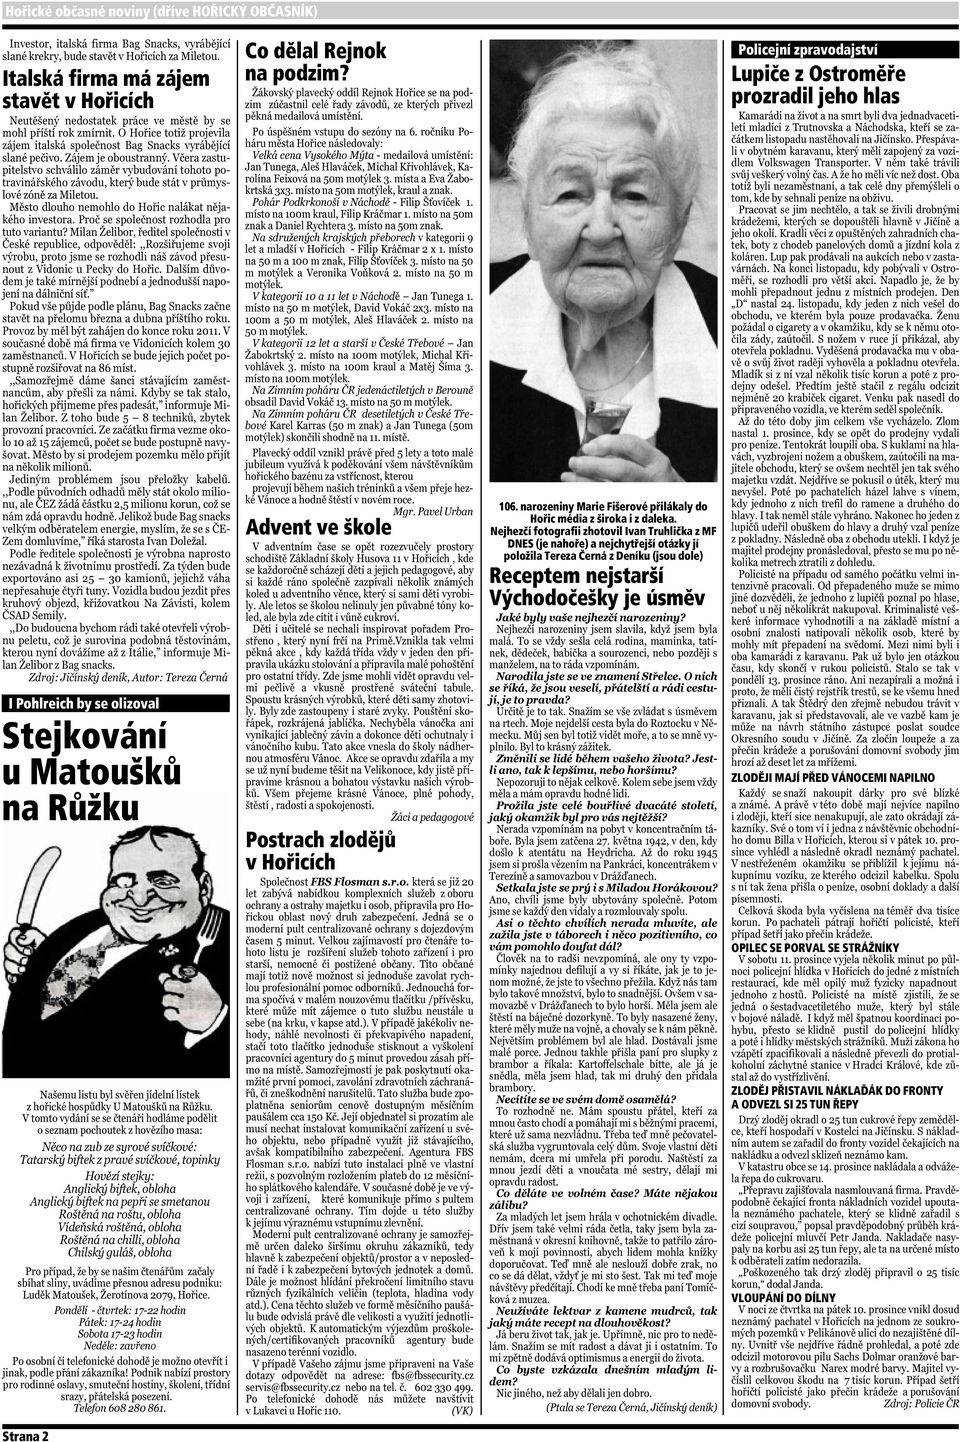 Nejhezčí fotografii zhotovil Ivan Truhlička z MF DNES (je nahoře) a nejchytřejší otázky jí položila Tereza Černá z Deníku (jsou dole) Receptem nejstarší Východočešky je